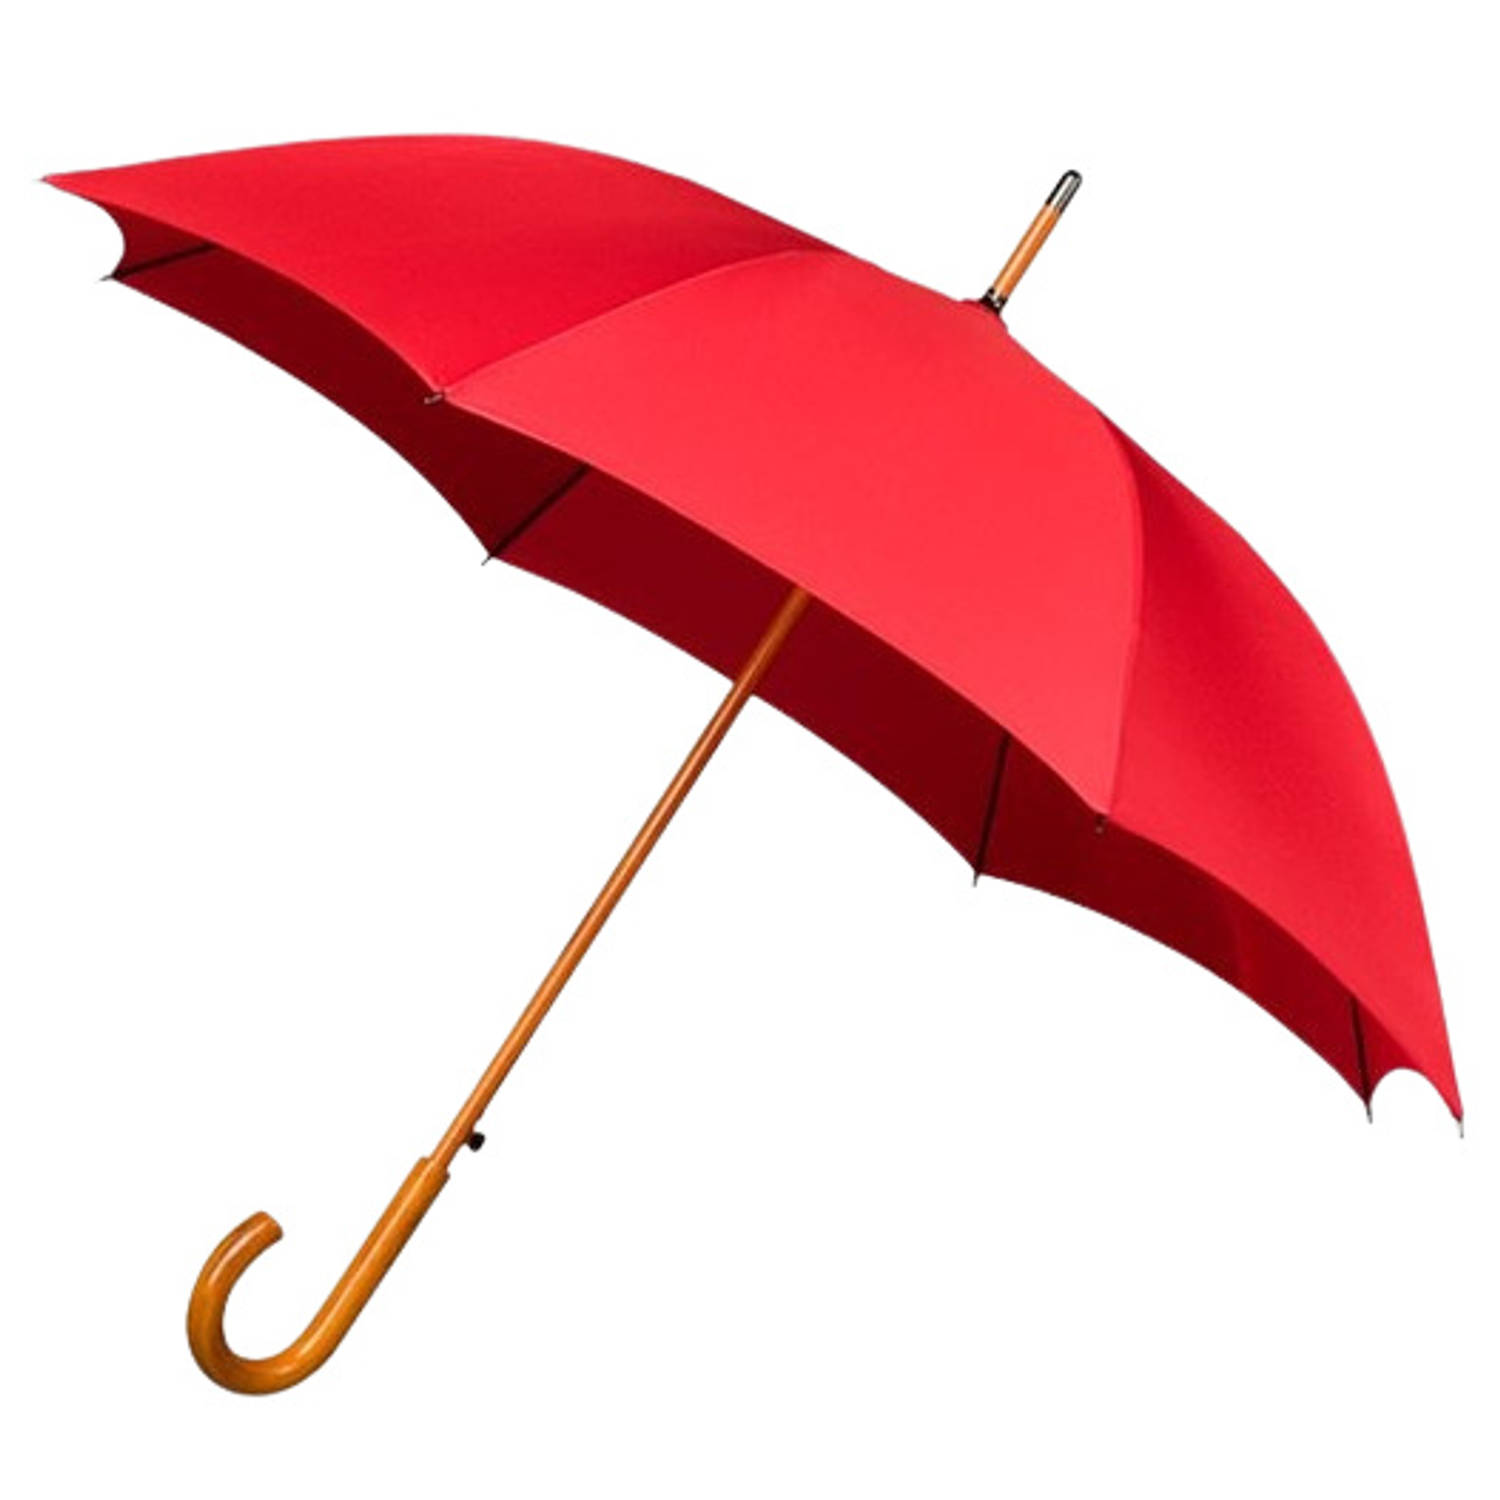 Falcone klassieke paraplu houten stok & haak rood